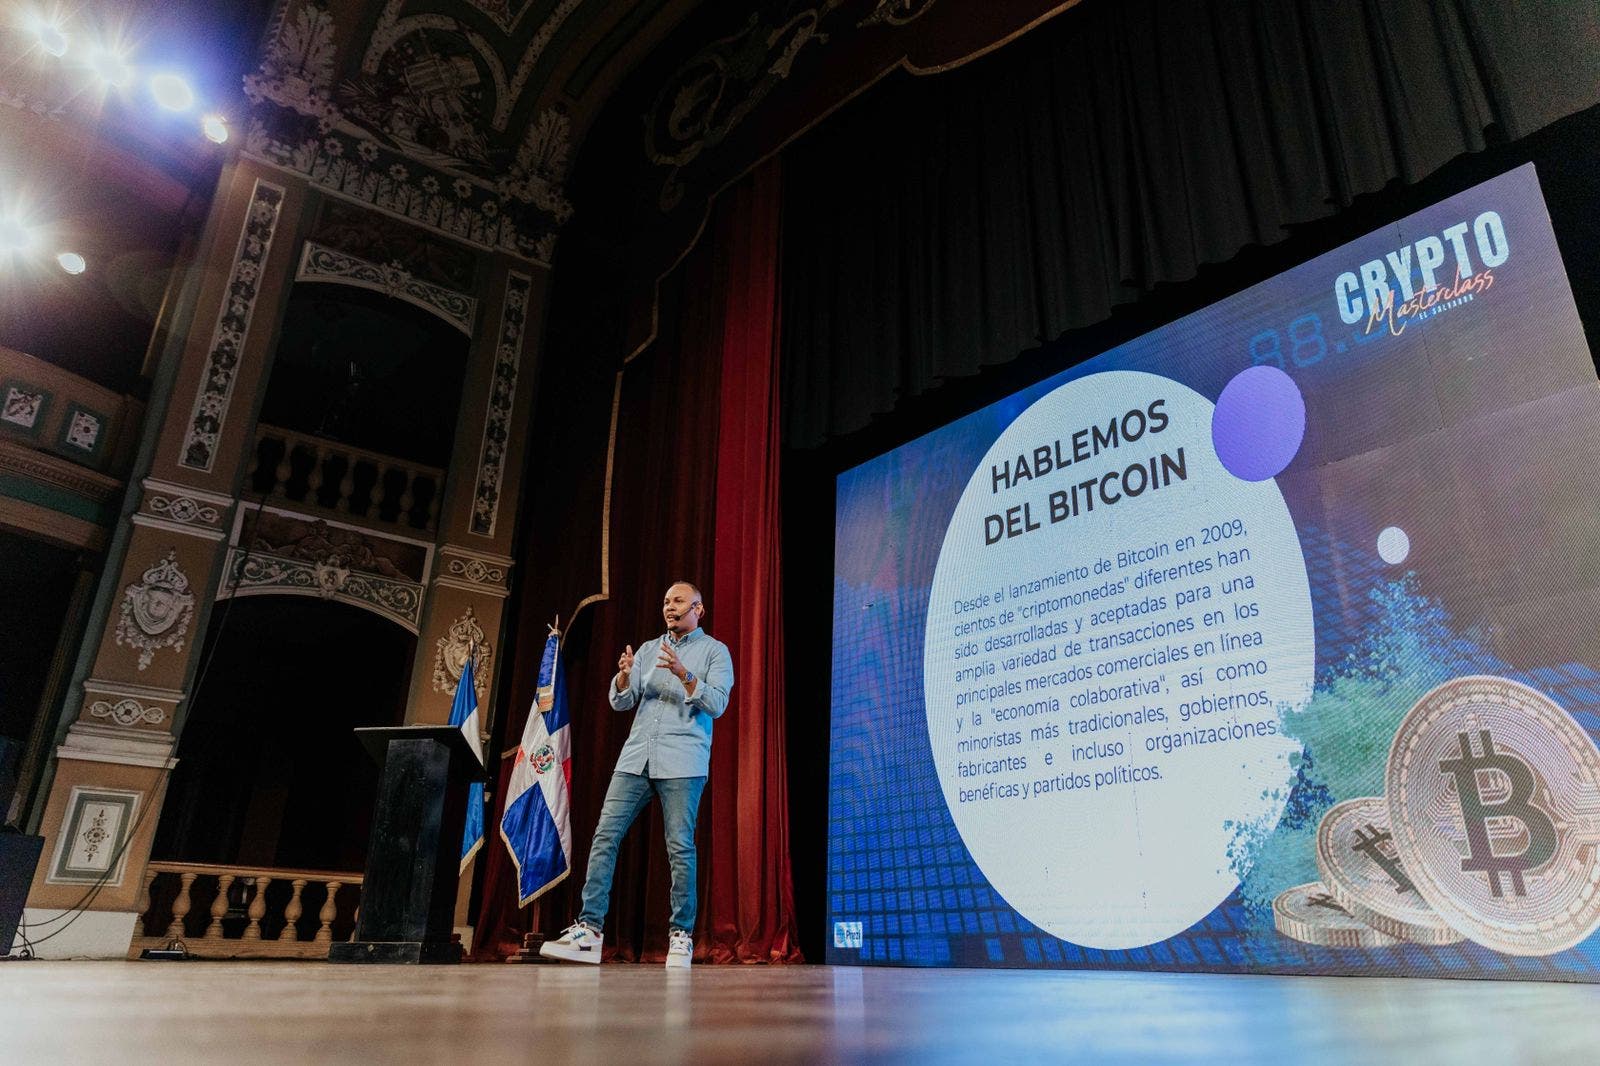 Academia se une a autoridades salvadoreñas para capacitar a jóvenes en bitcoin